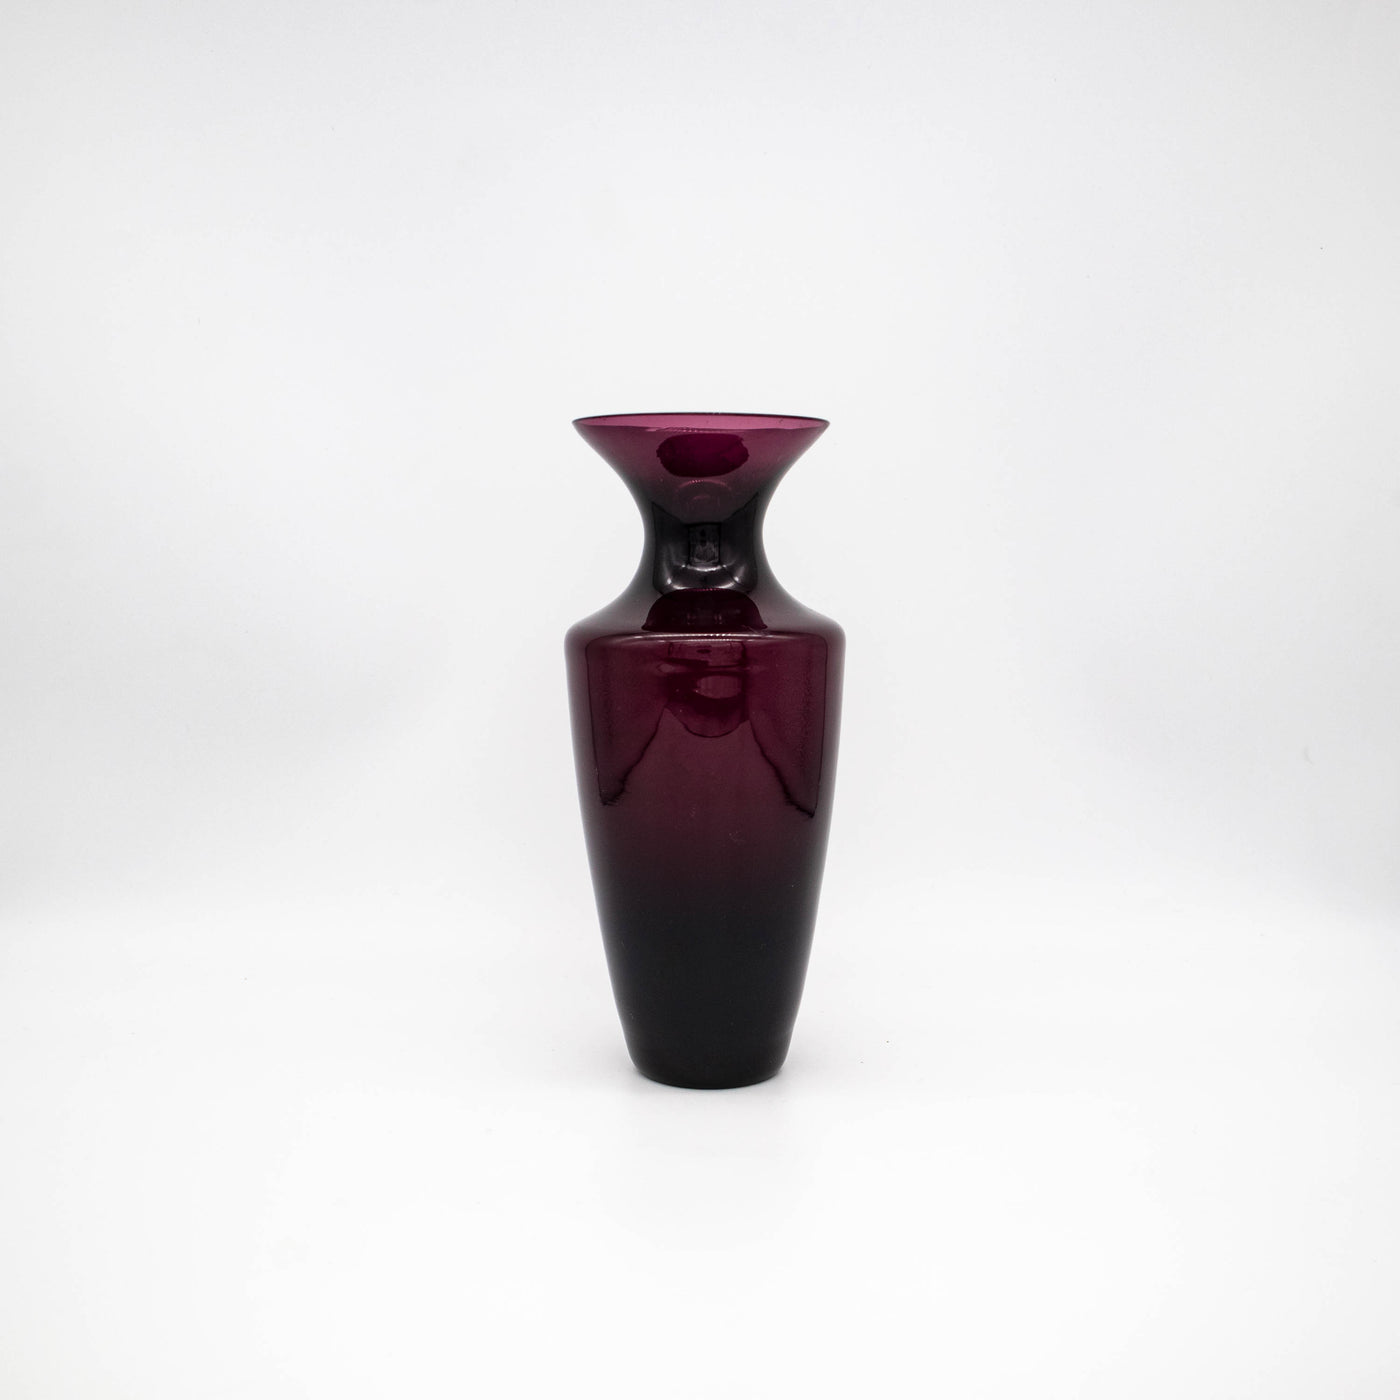 Amethyst-Glas Vase, Rückseite